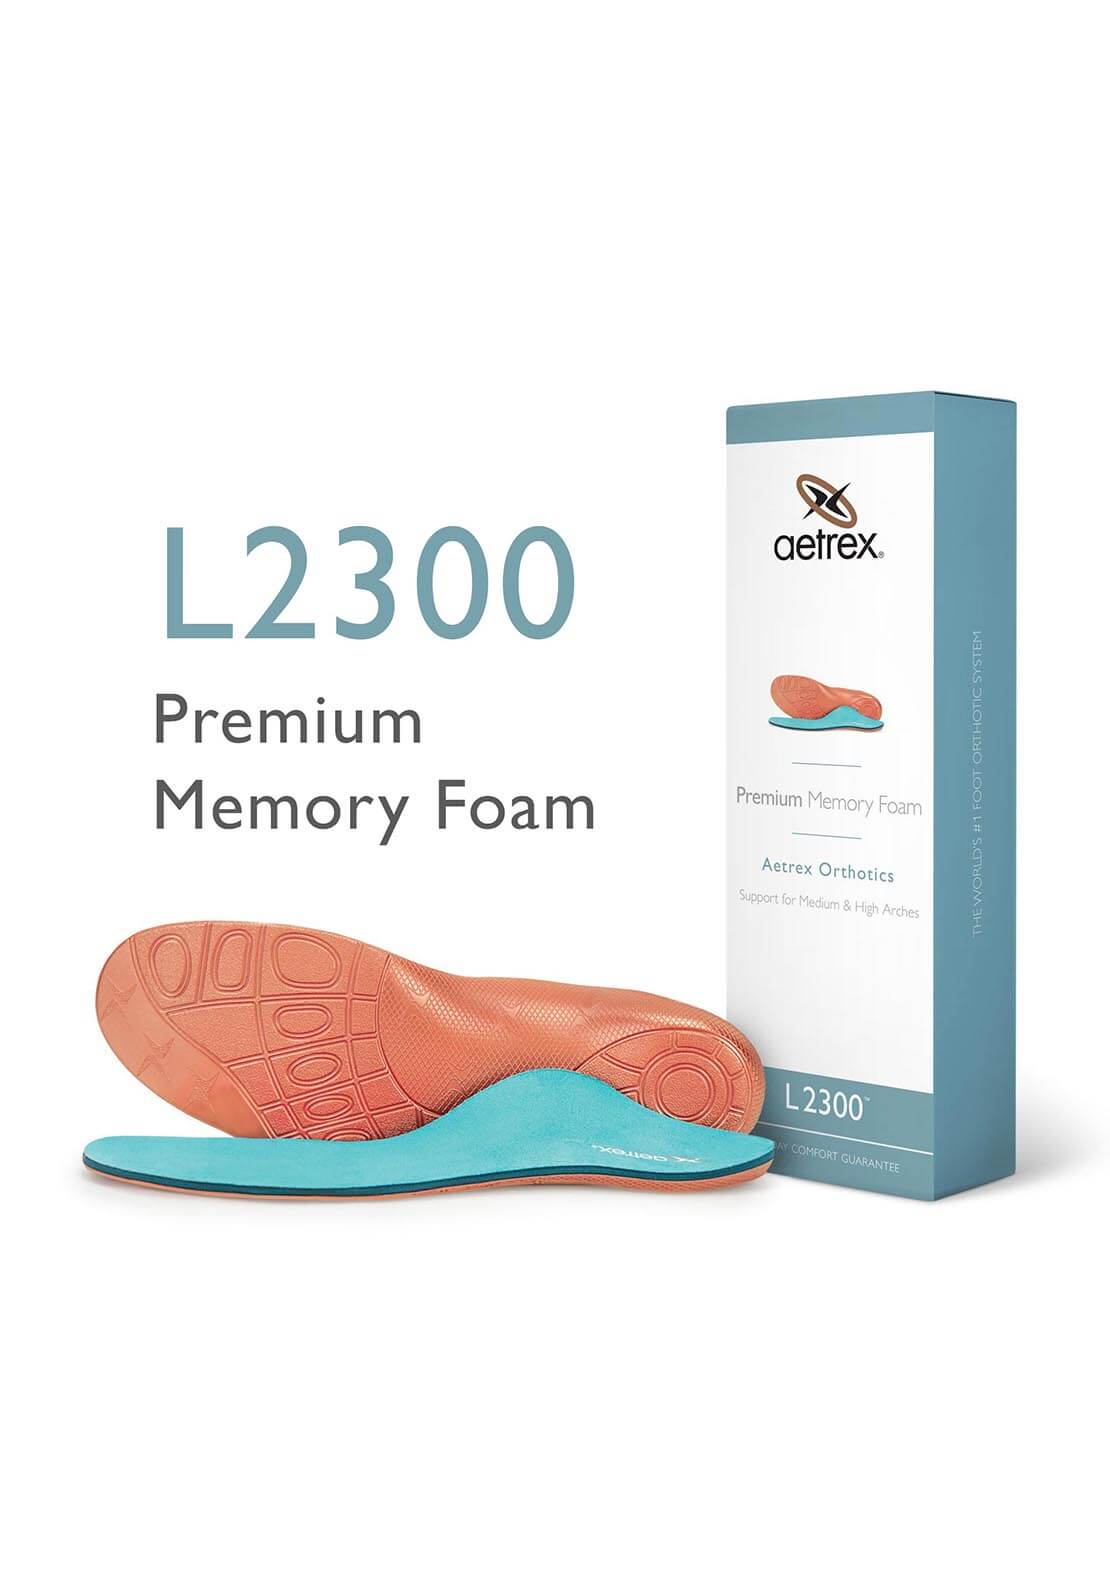 Aetrex Premium Memory Foam Orthotics L2300 1 Shaws Department Stores